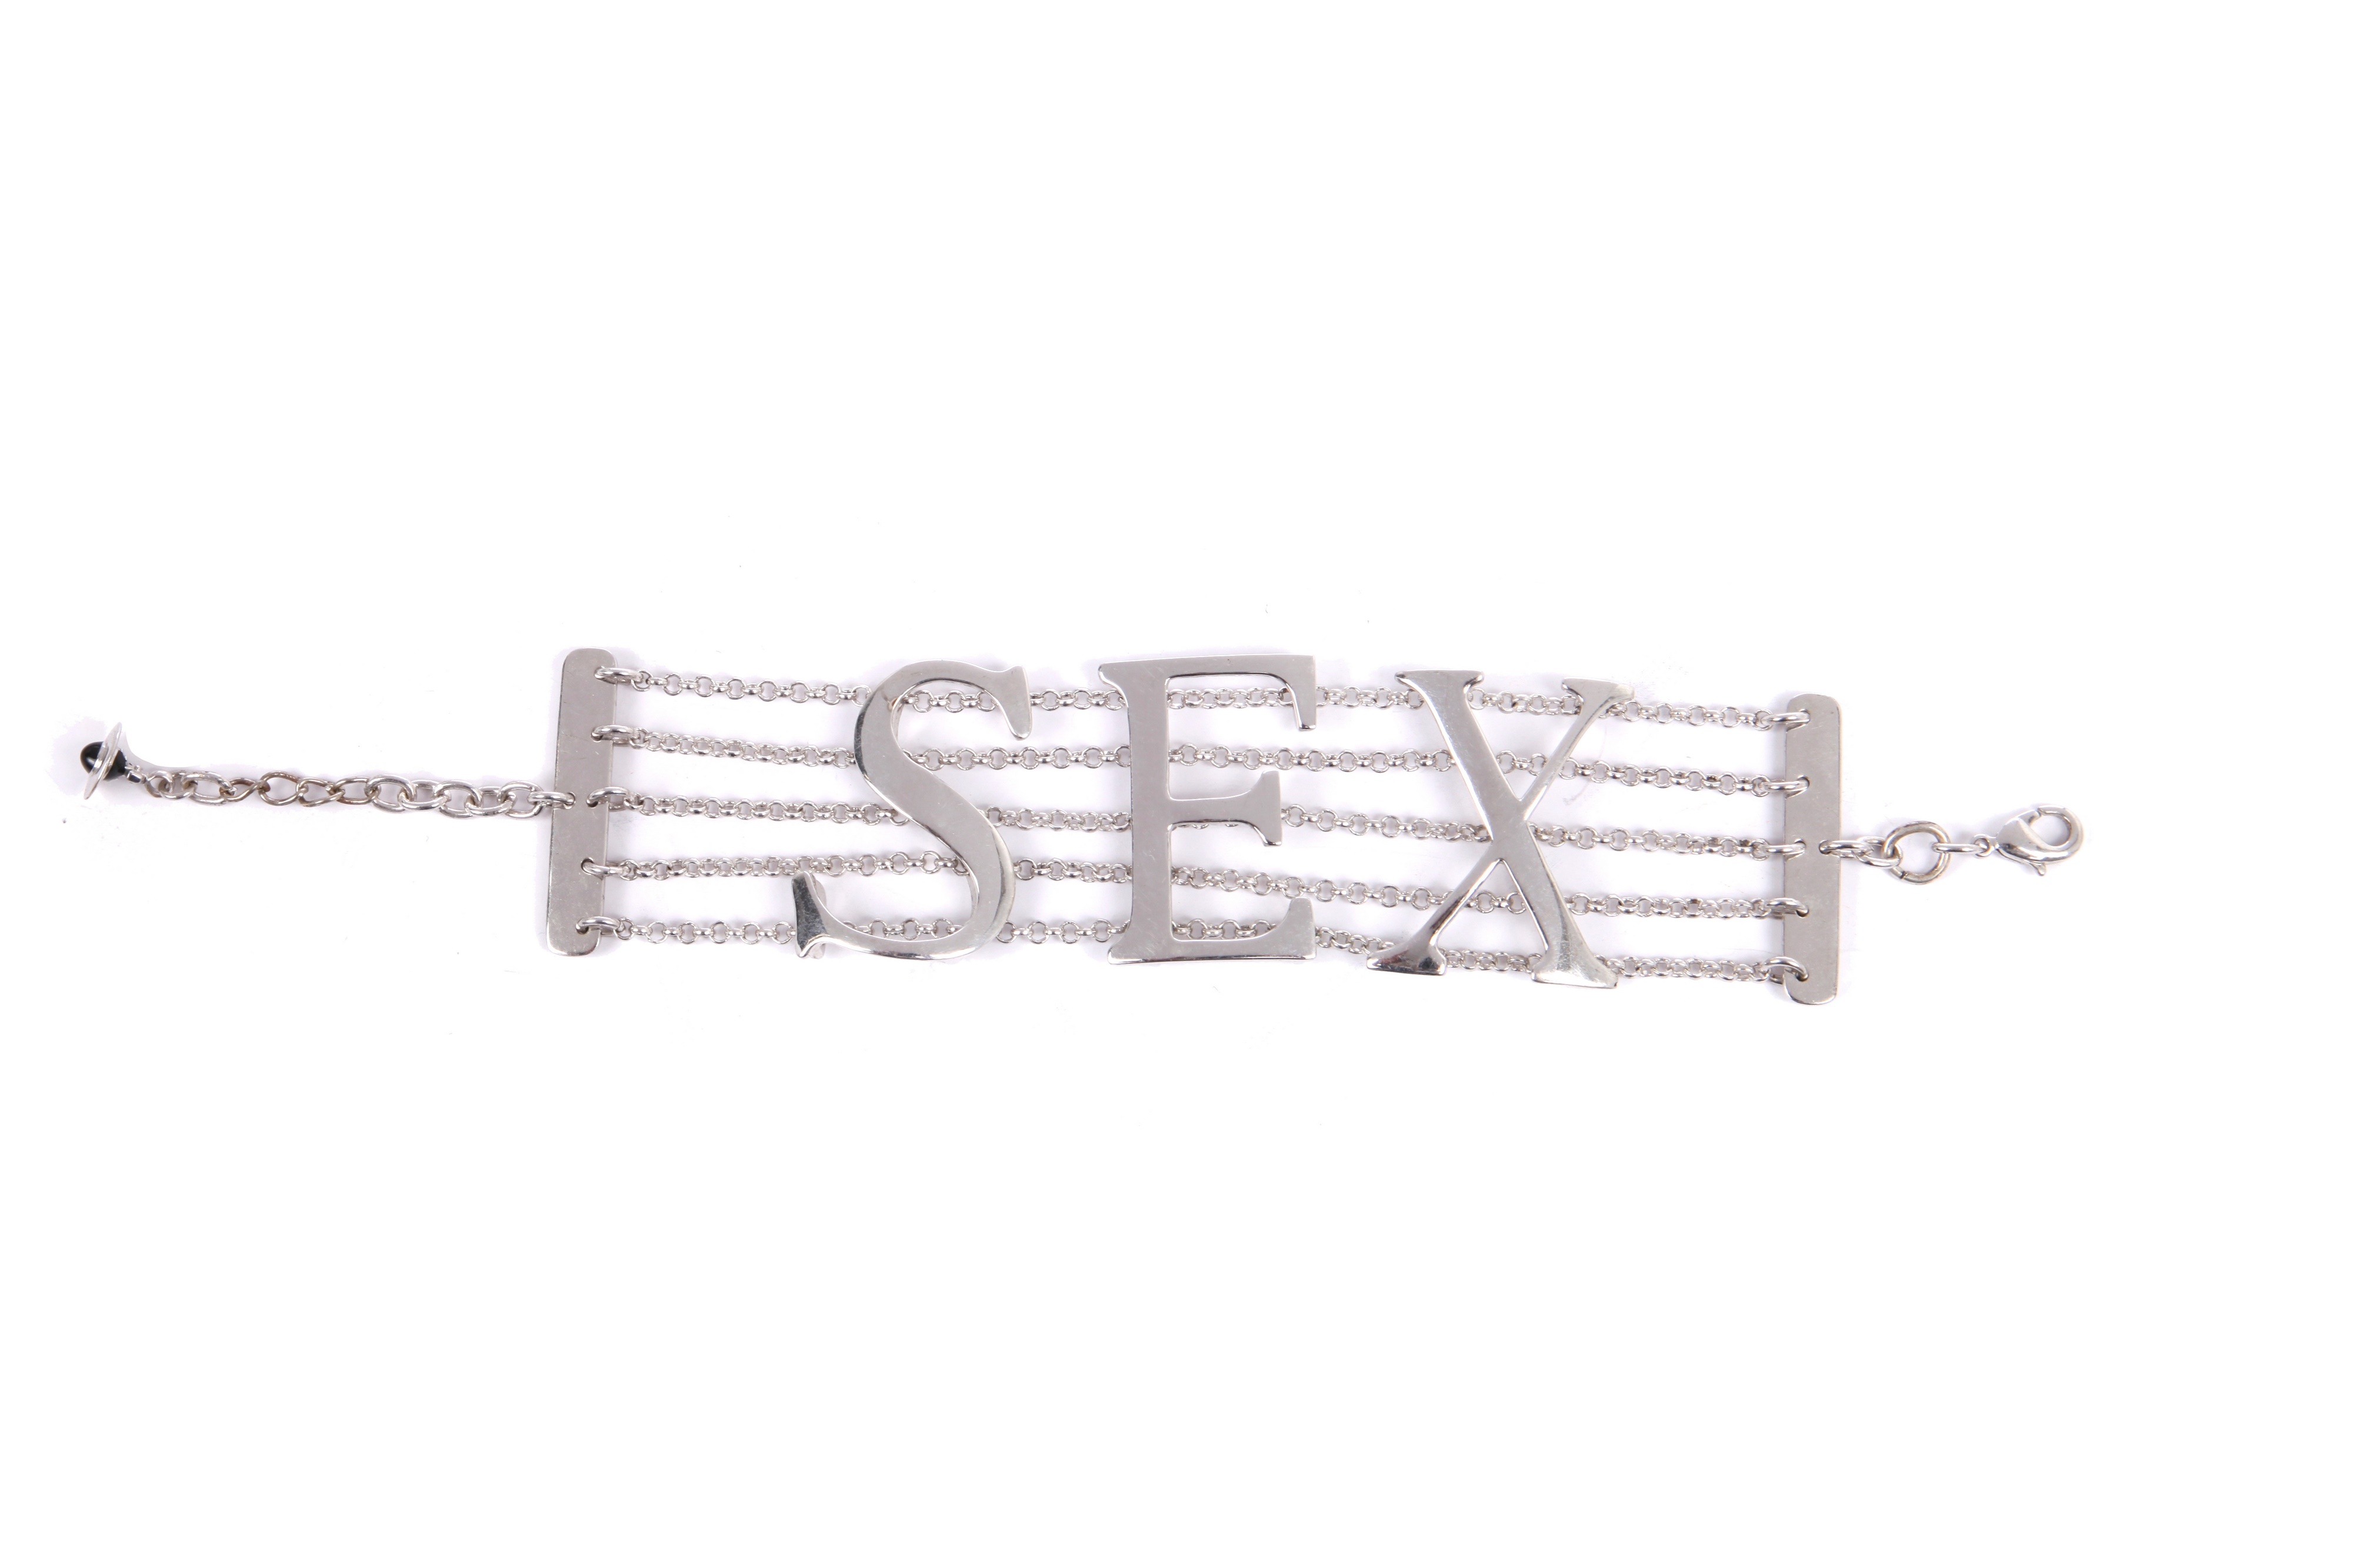 Lot 71 - Jordan's Vivienne Westwood 'SEX' chain